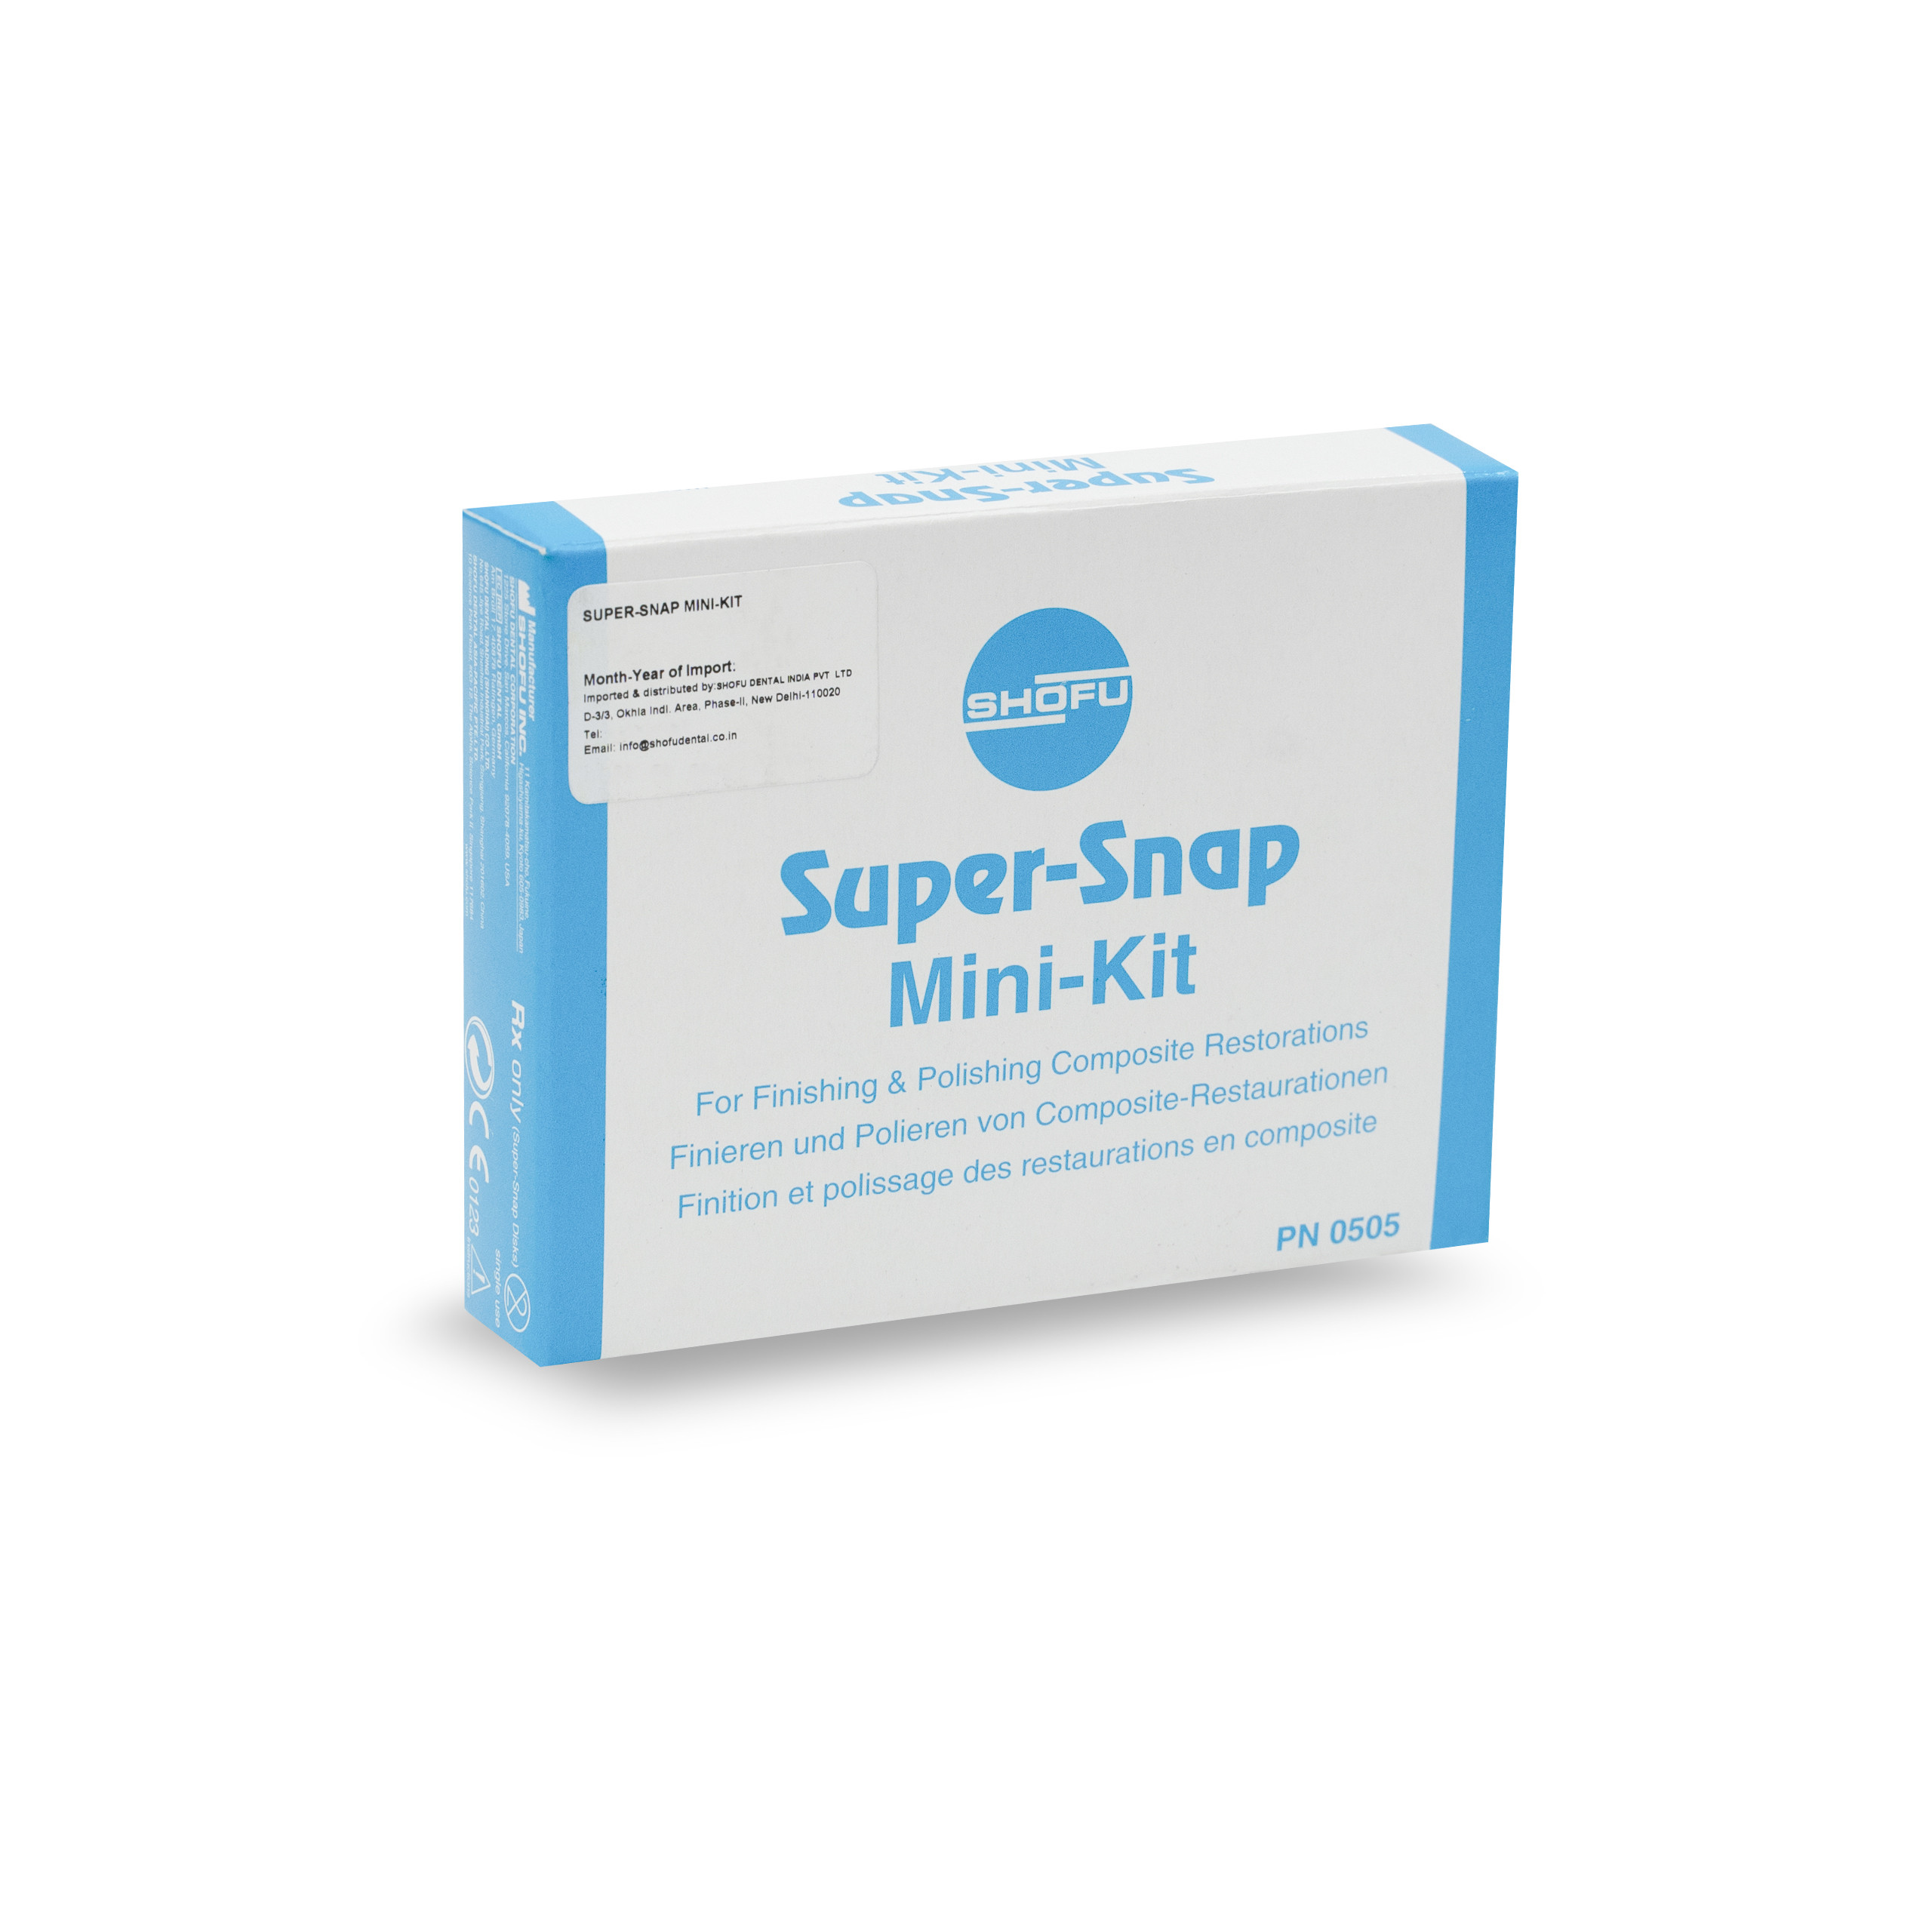 Shofu Super Snap Mini Kit for Finishing & Polishing Composite Restorations